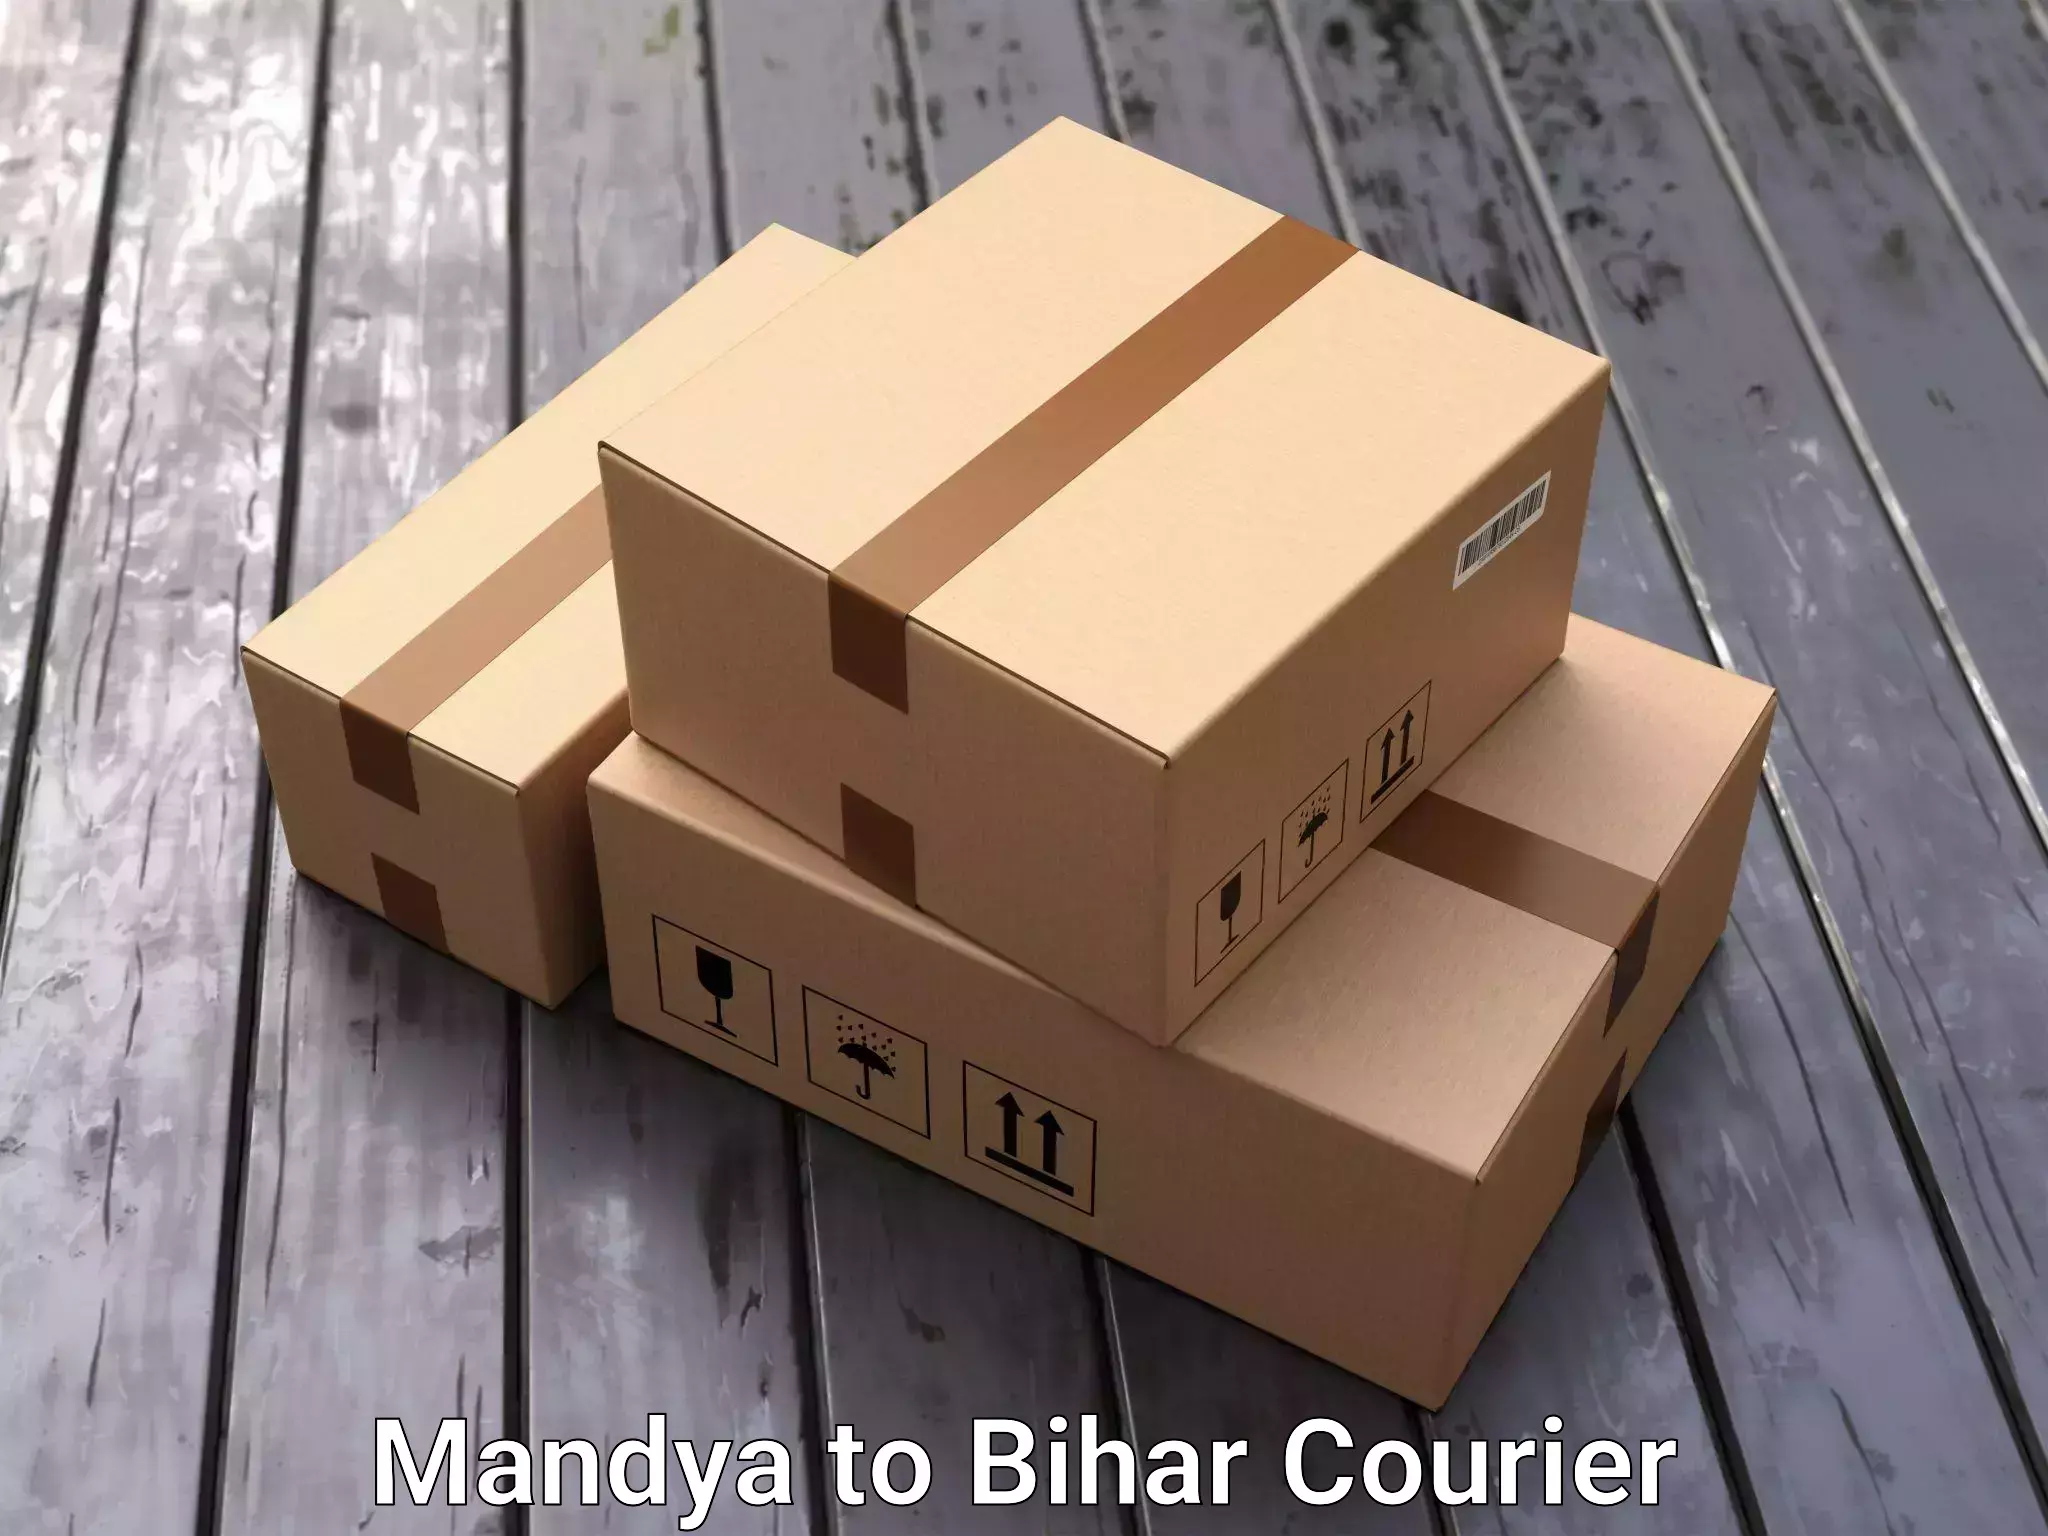 Furniture transport professionals Mandya to Sheohar